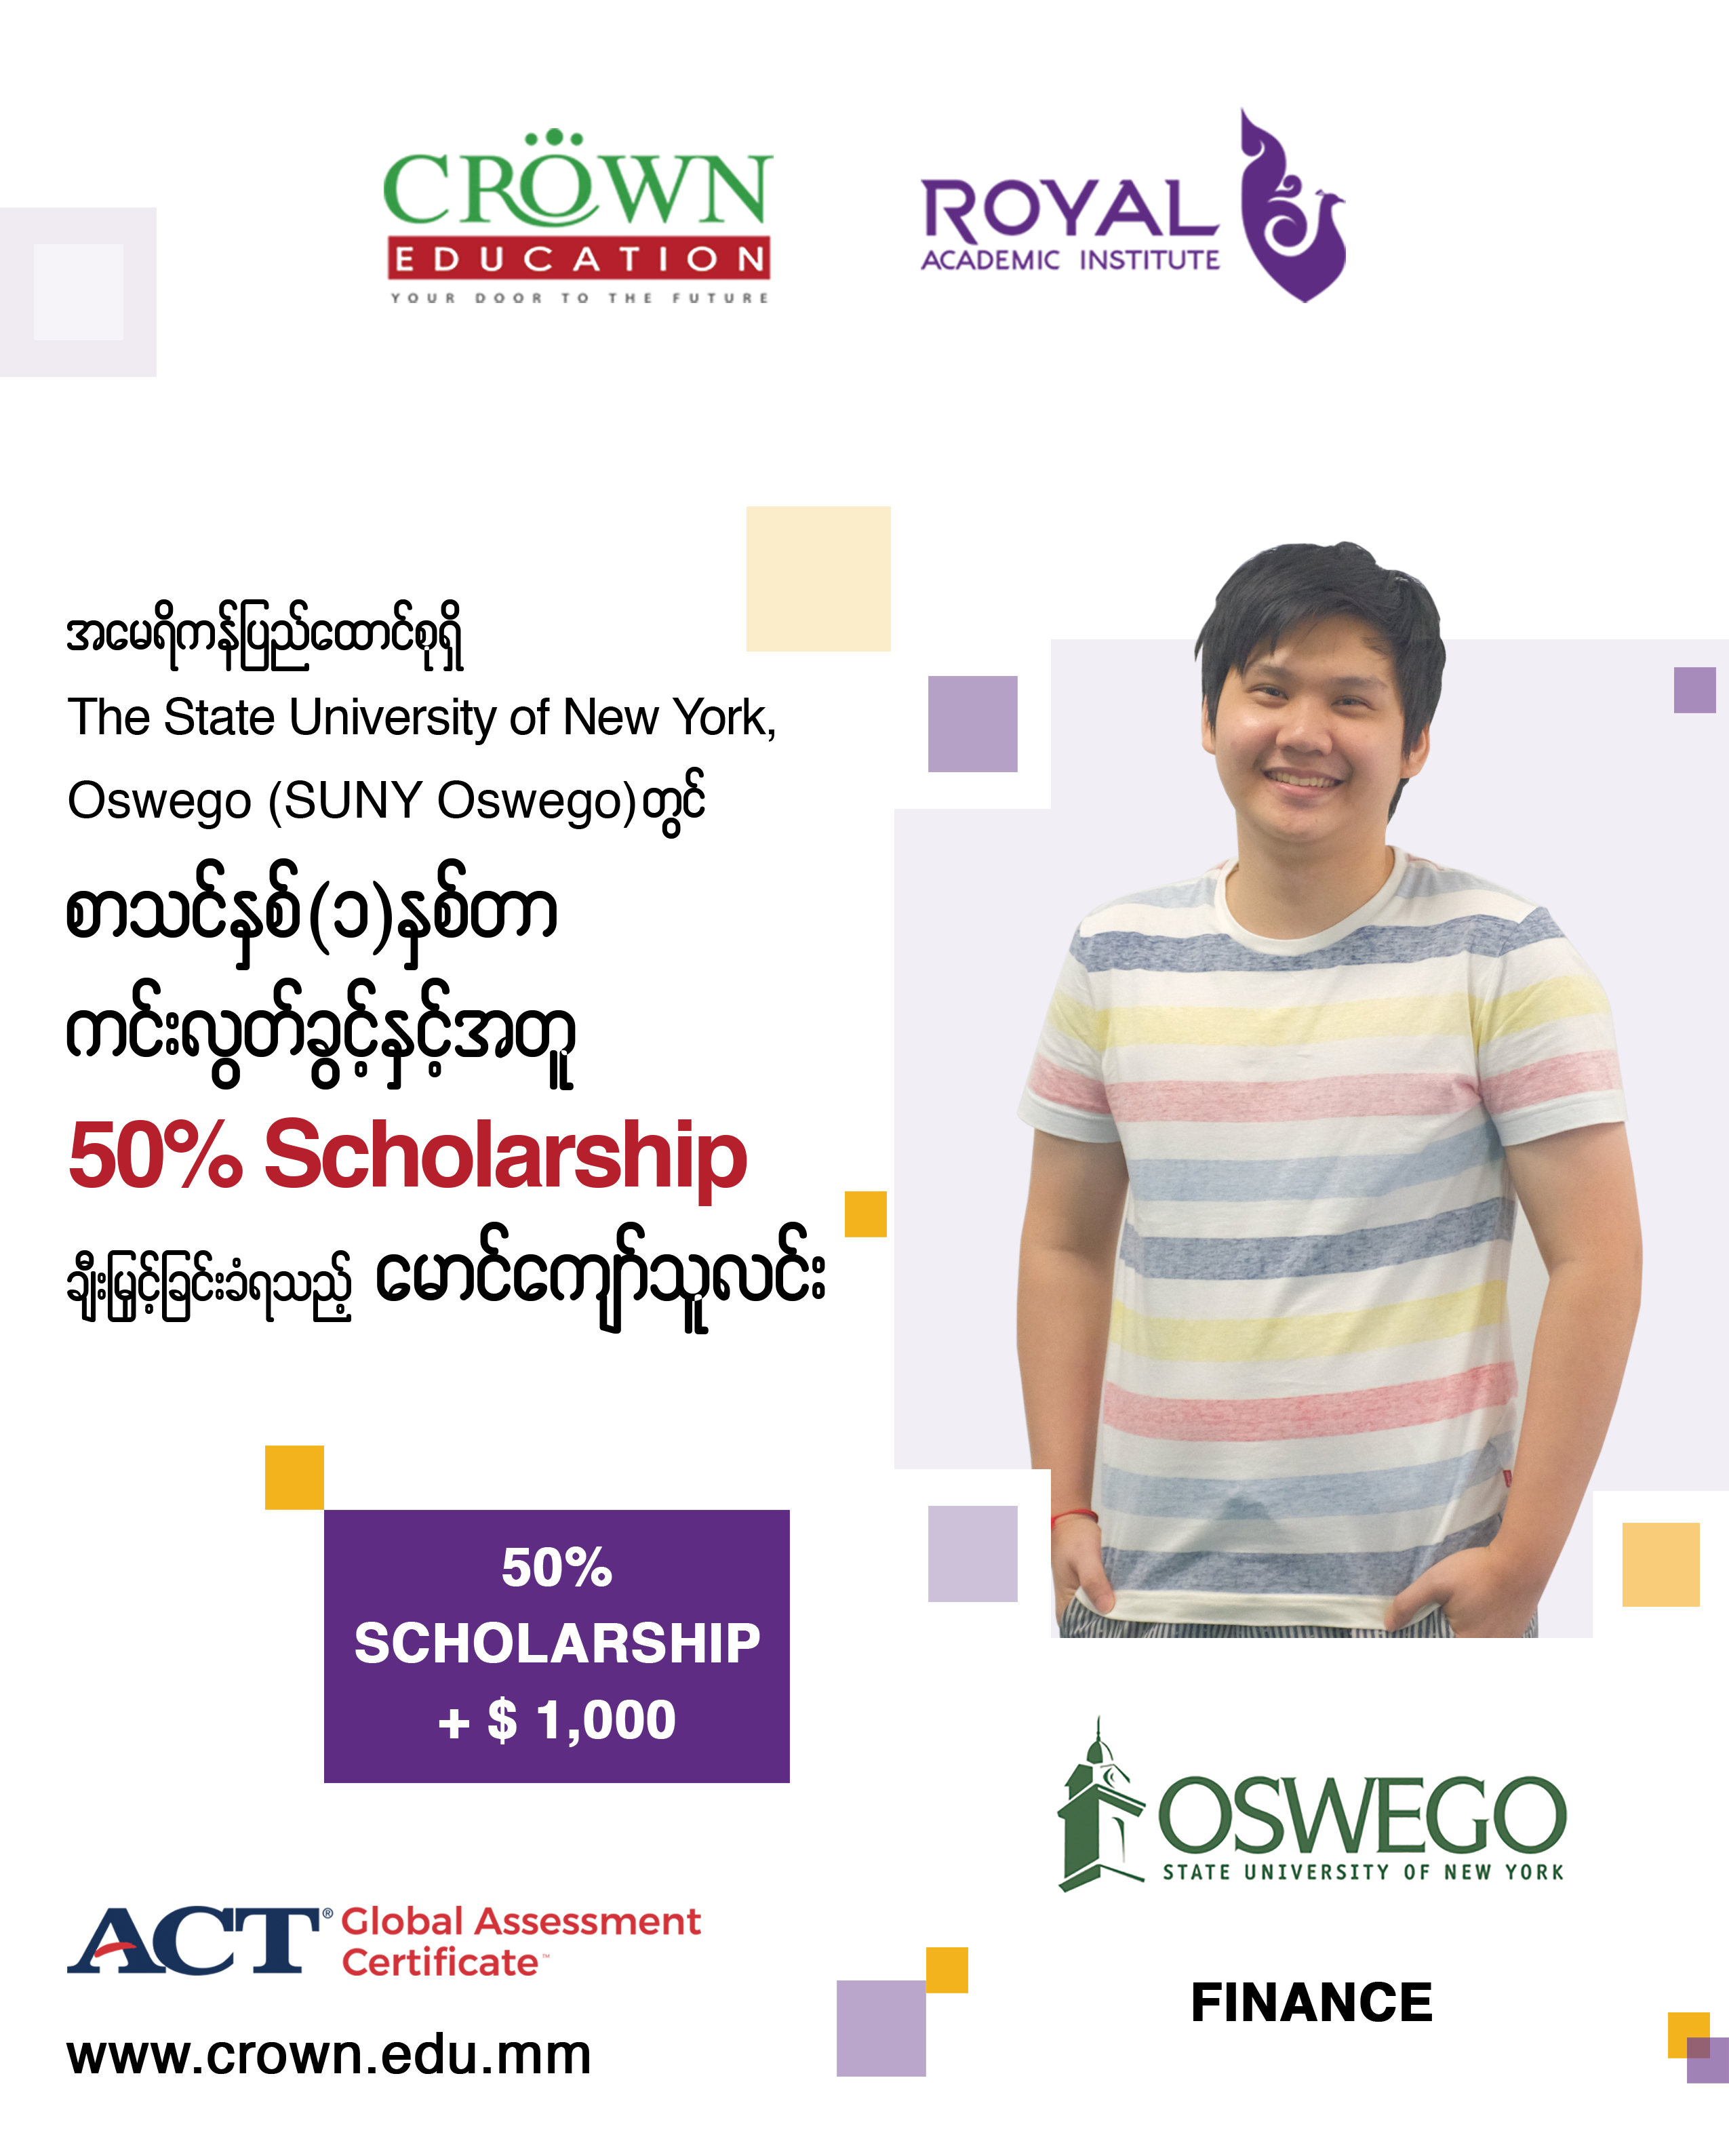 ❝အမေရိကန်ပြည်ထောင်စုရှိ State University of New York, Oswego (SUNY Oswego) တွင် စာသင်နှစ် တစ်နှစ်တာကင်းလွတ်ခွင့်နှင့်အတူ 50% scholarship + 1,000 USD ချီးမြှင့်ခြင်းခံရသည့် ကျောင်းသား မောင်ကျော်သူလင်း❞